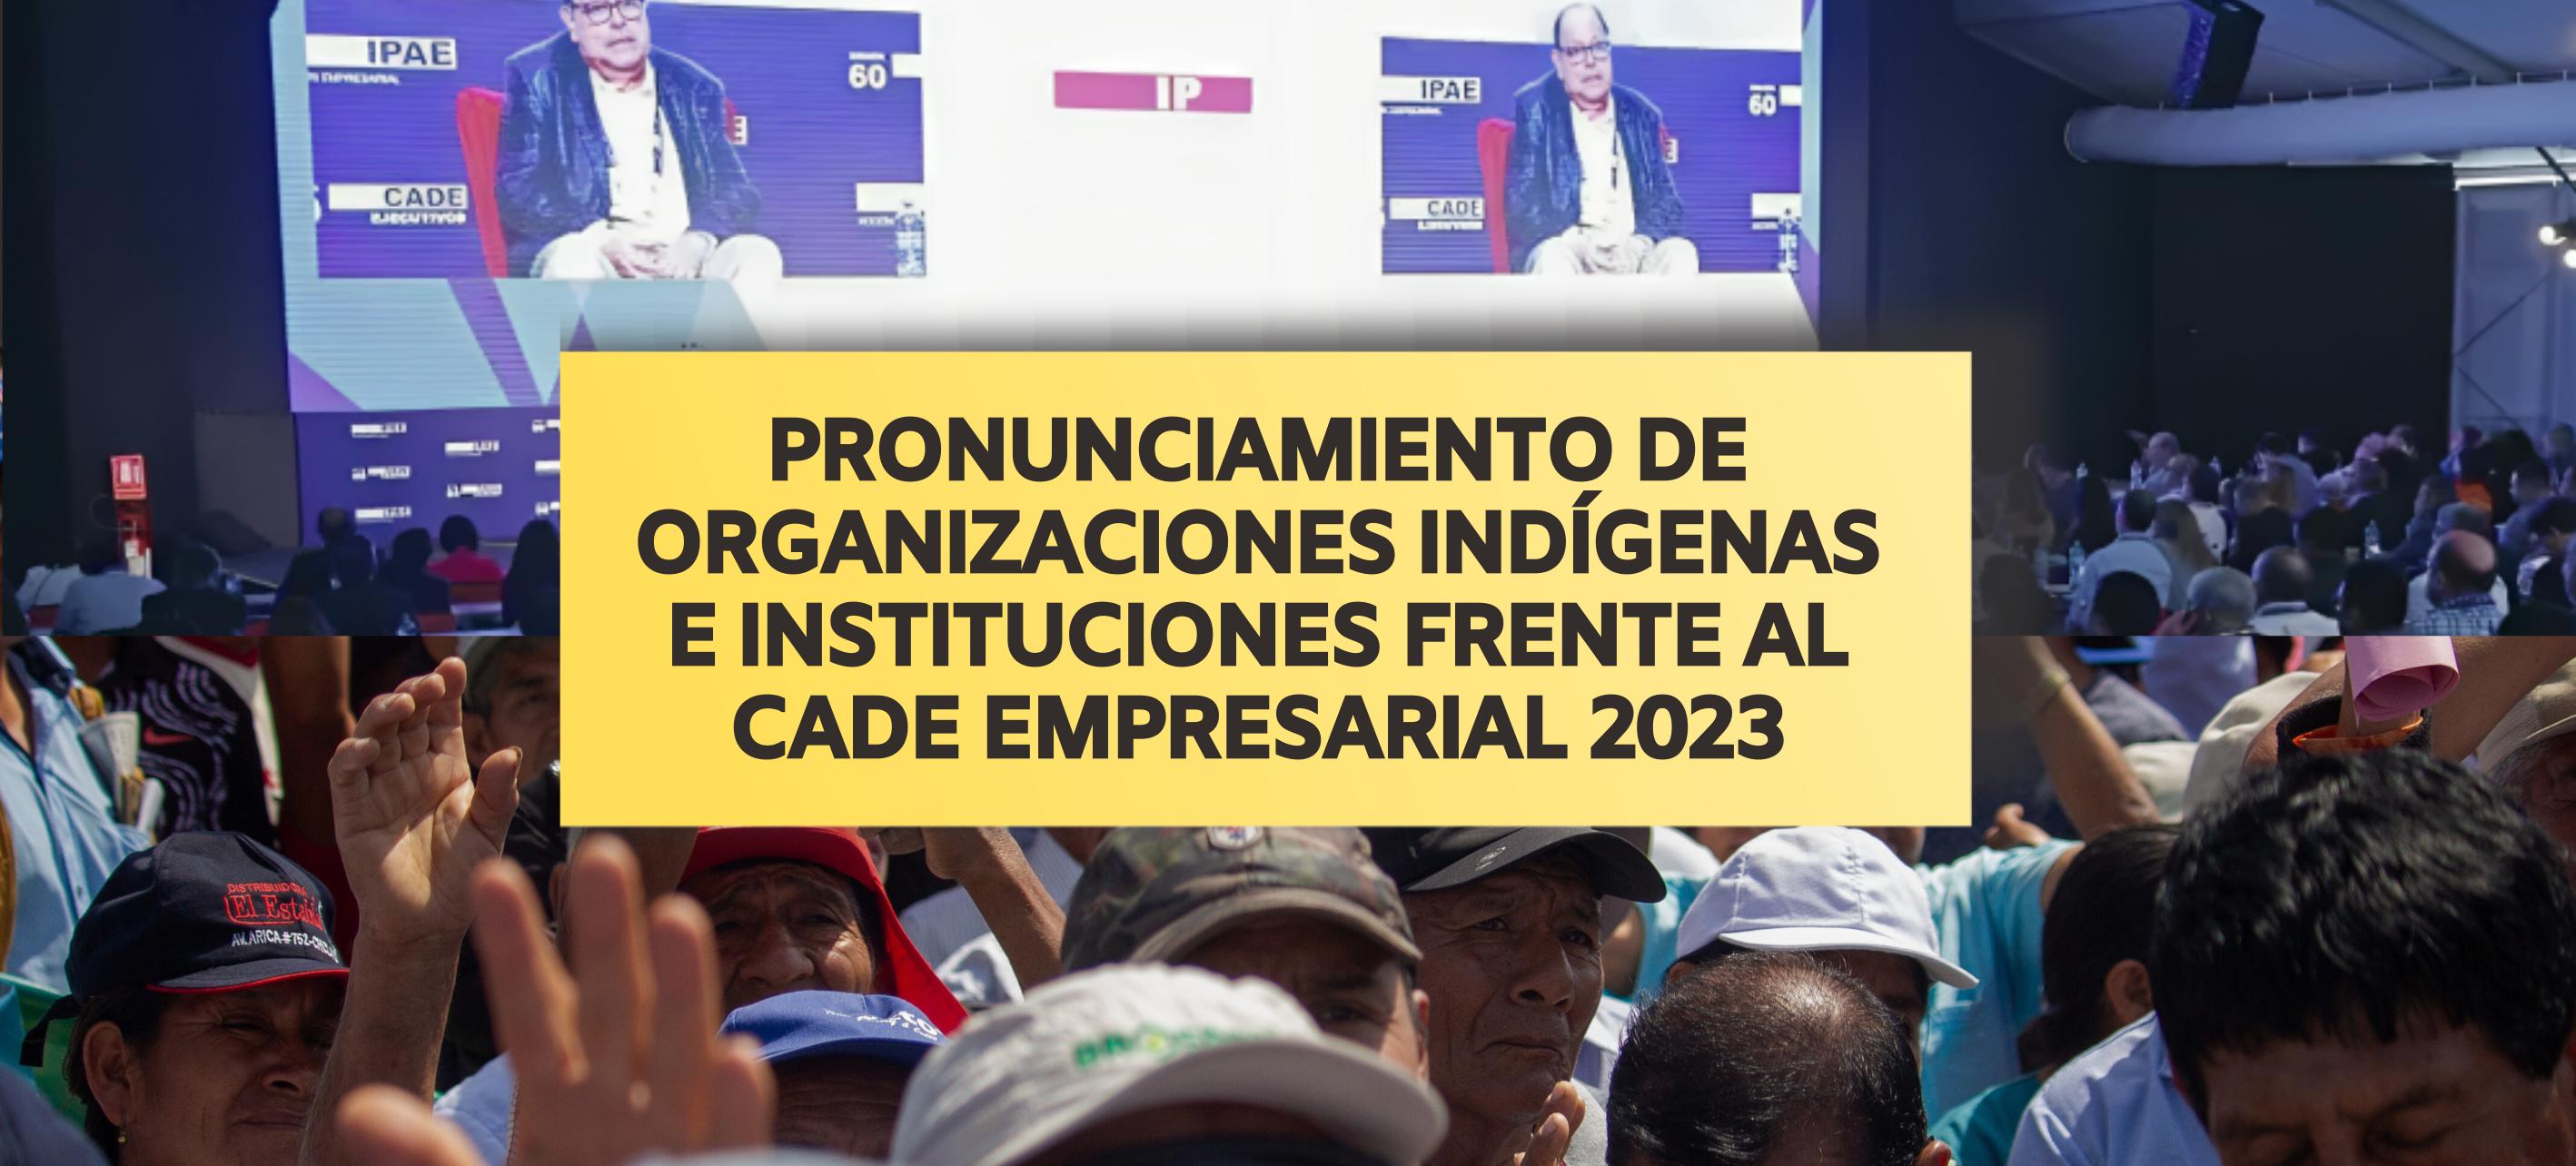 Organizaciones indígenas, comunidades, sindicatos e instituciones de sociedad civil nos pronunciamos frente al CADE Empresarial 2023